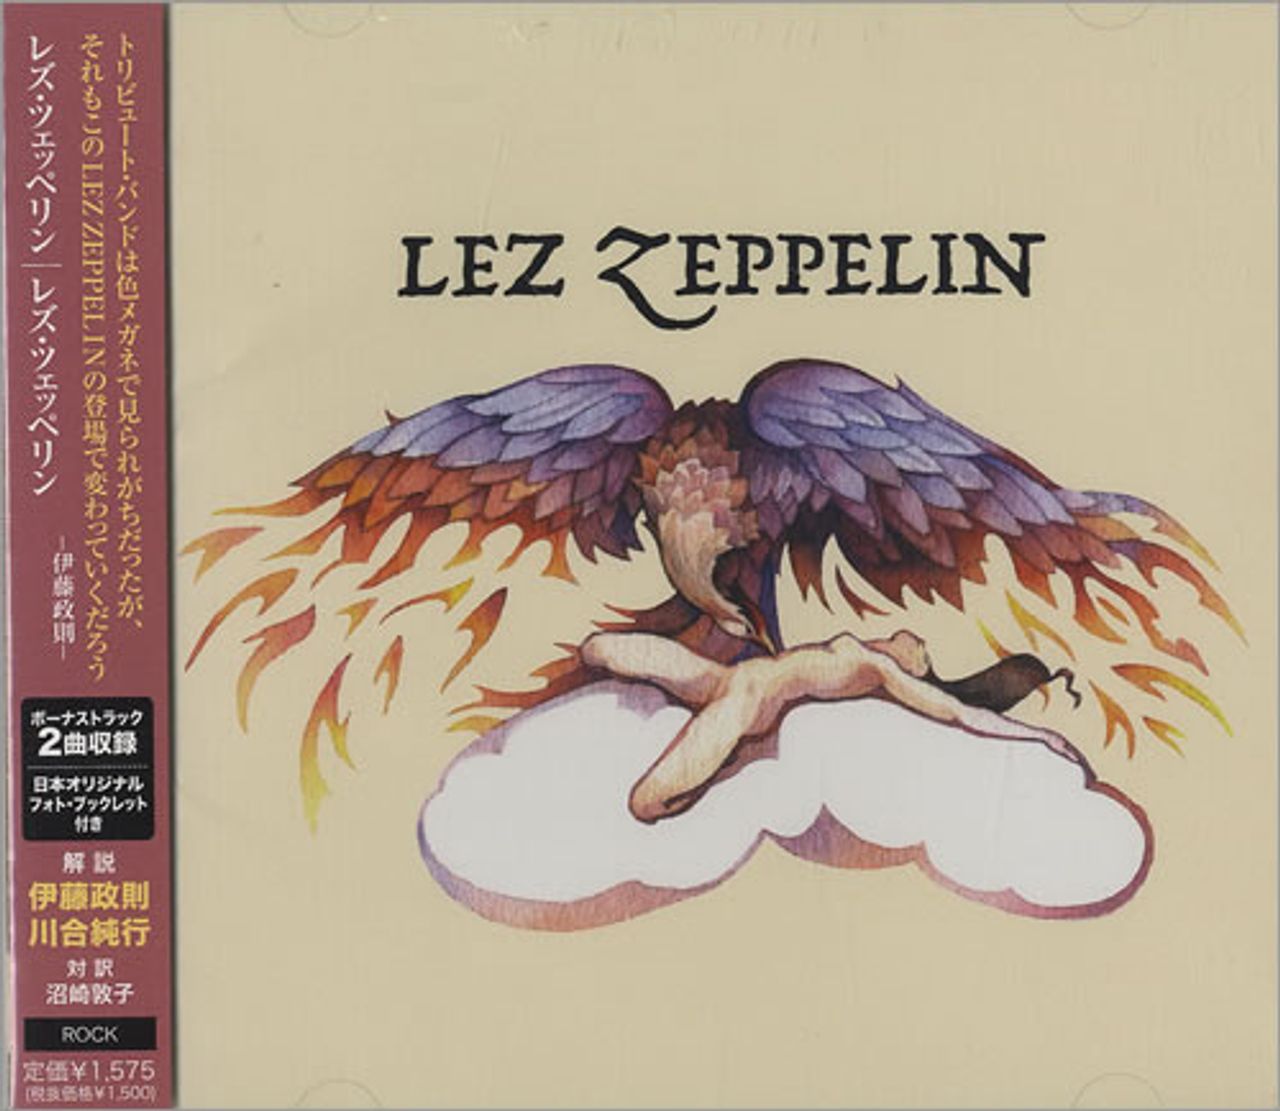 Led Zeppelin Led Zeppelin US Promo CD single — RareVinyl.com